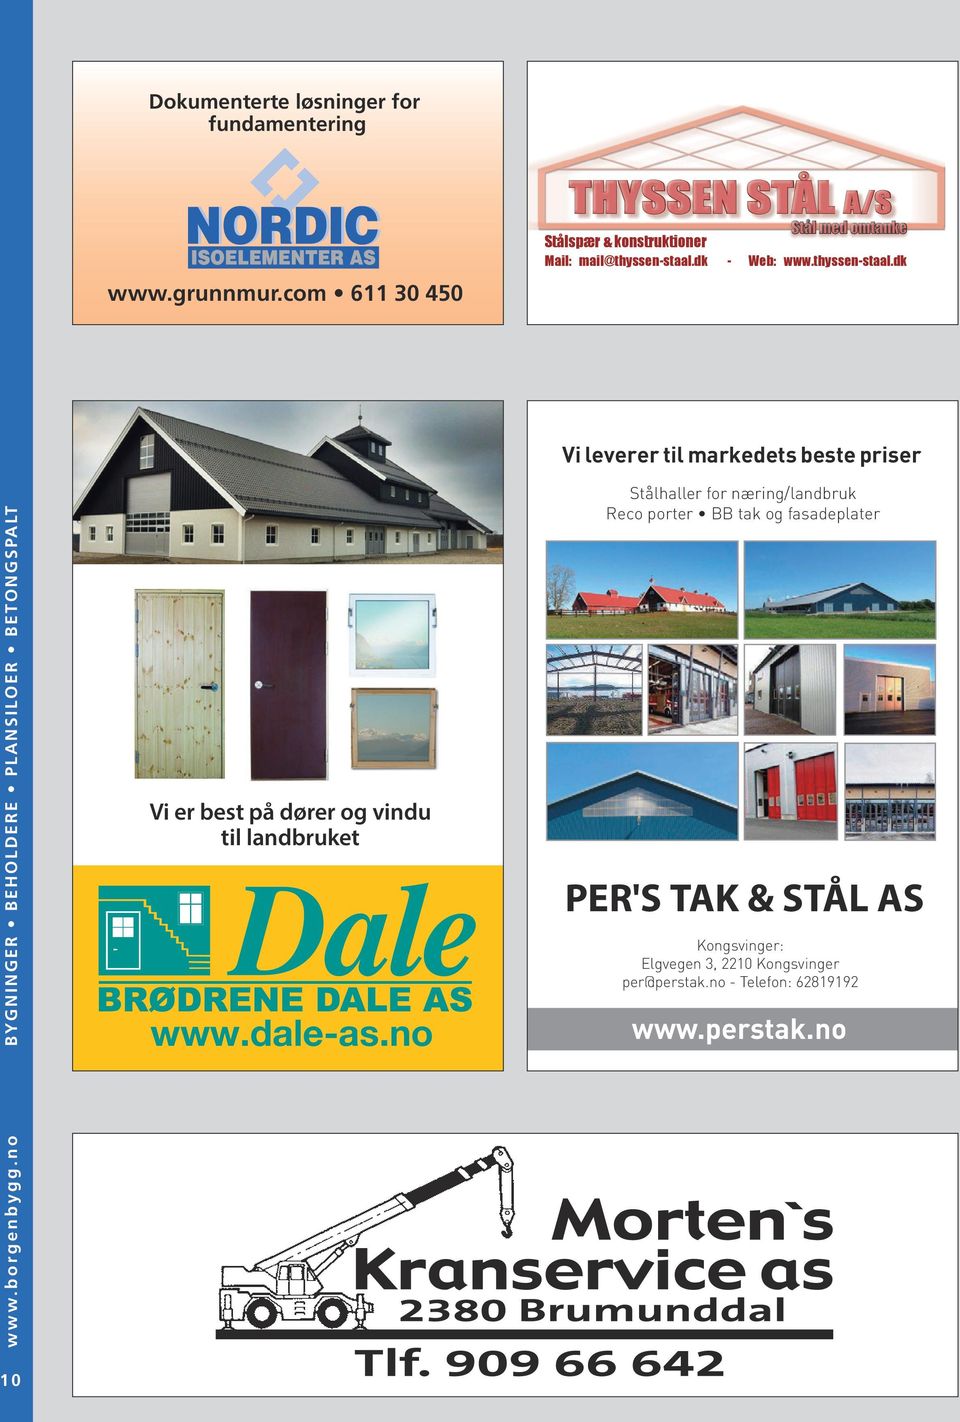 thyssen-staal.dk Vi er best på dører og vindu til landbruket www.dale-as.